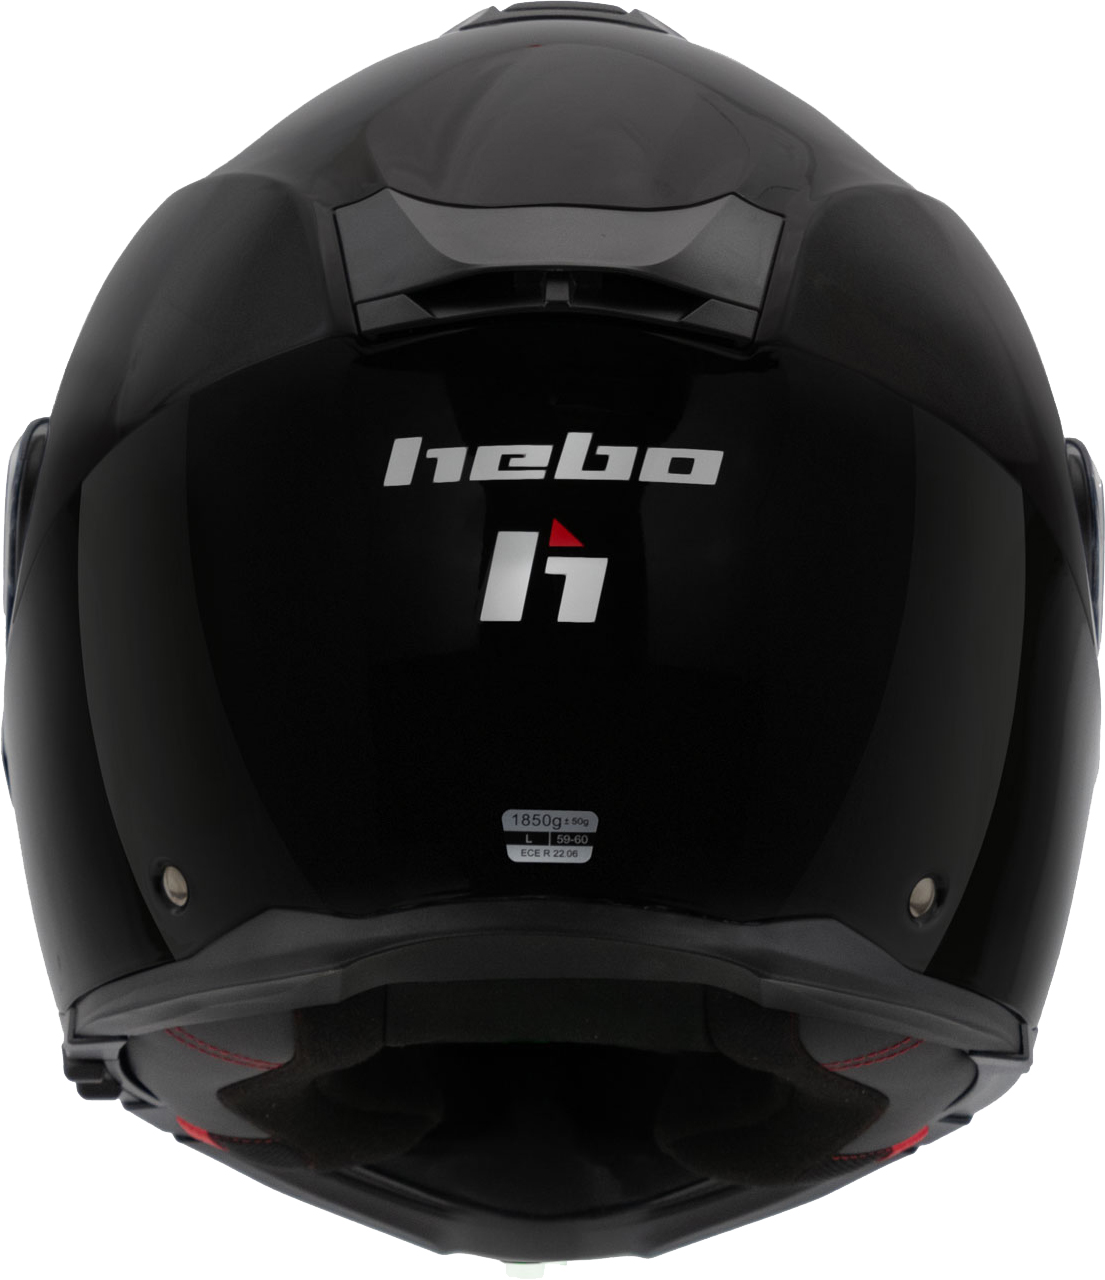 Helmet Flip Up H-272 TOURER IV Black HEBO 